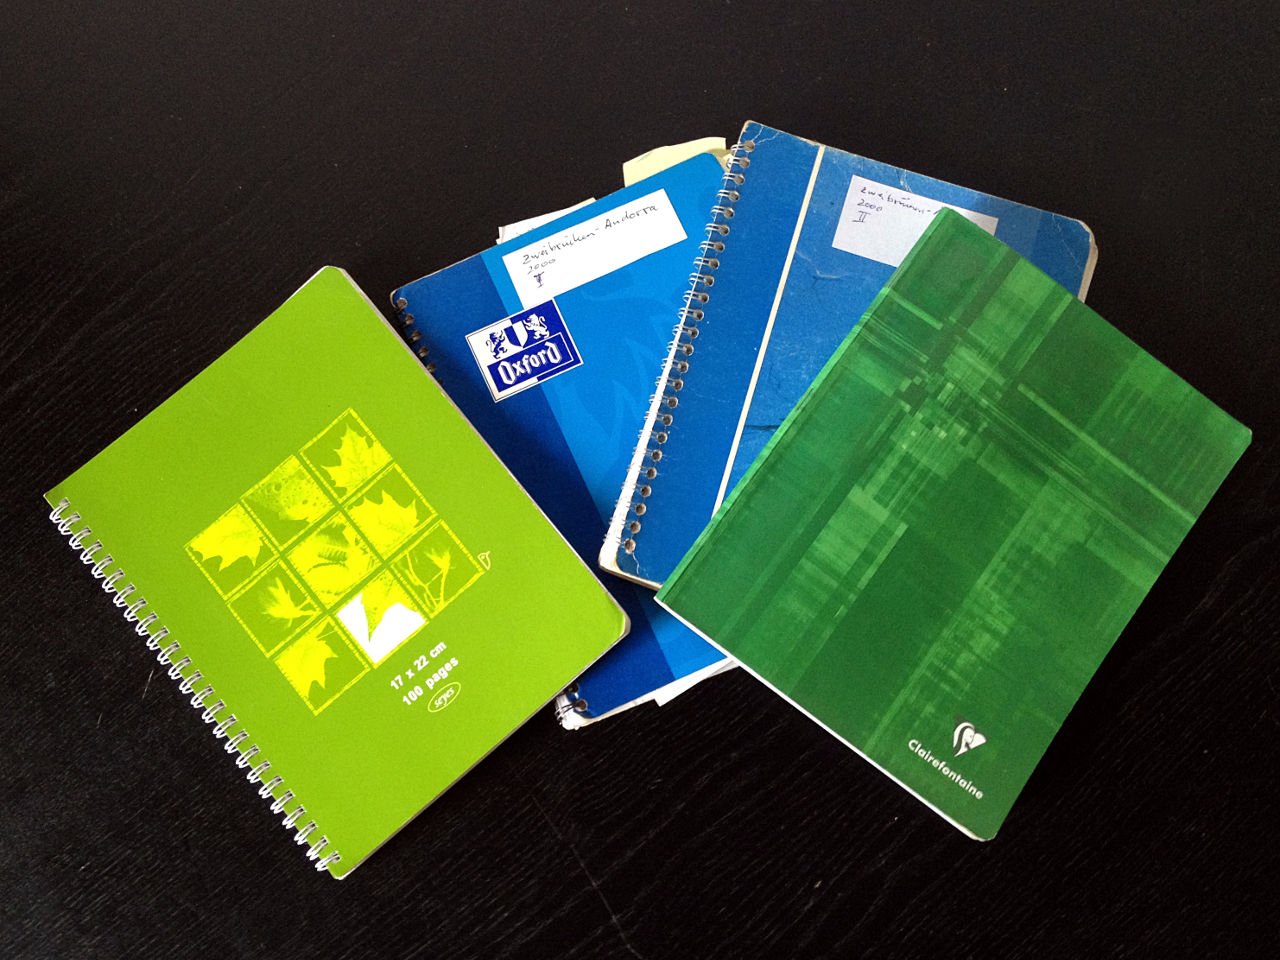 Zwei blaue und zwei grüne Notizbücher aufgefächert wie ein Kartenblatt auf schwarzem Grund